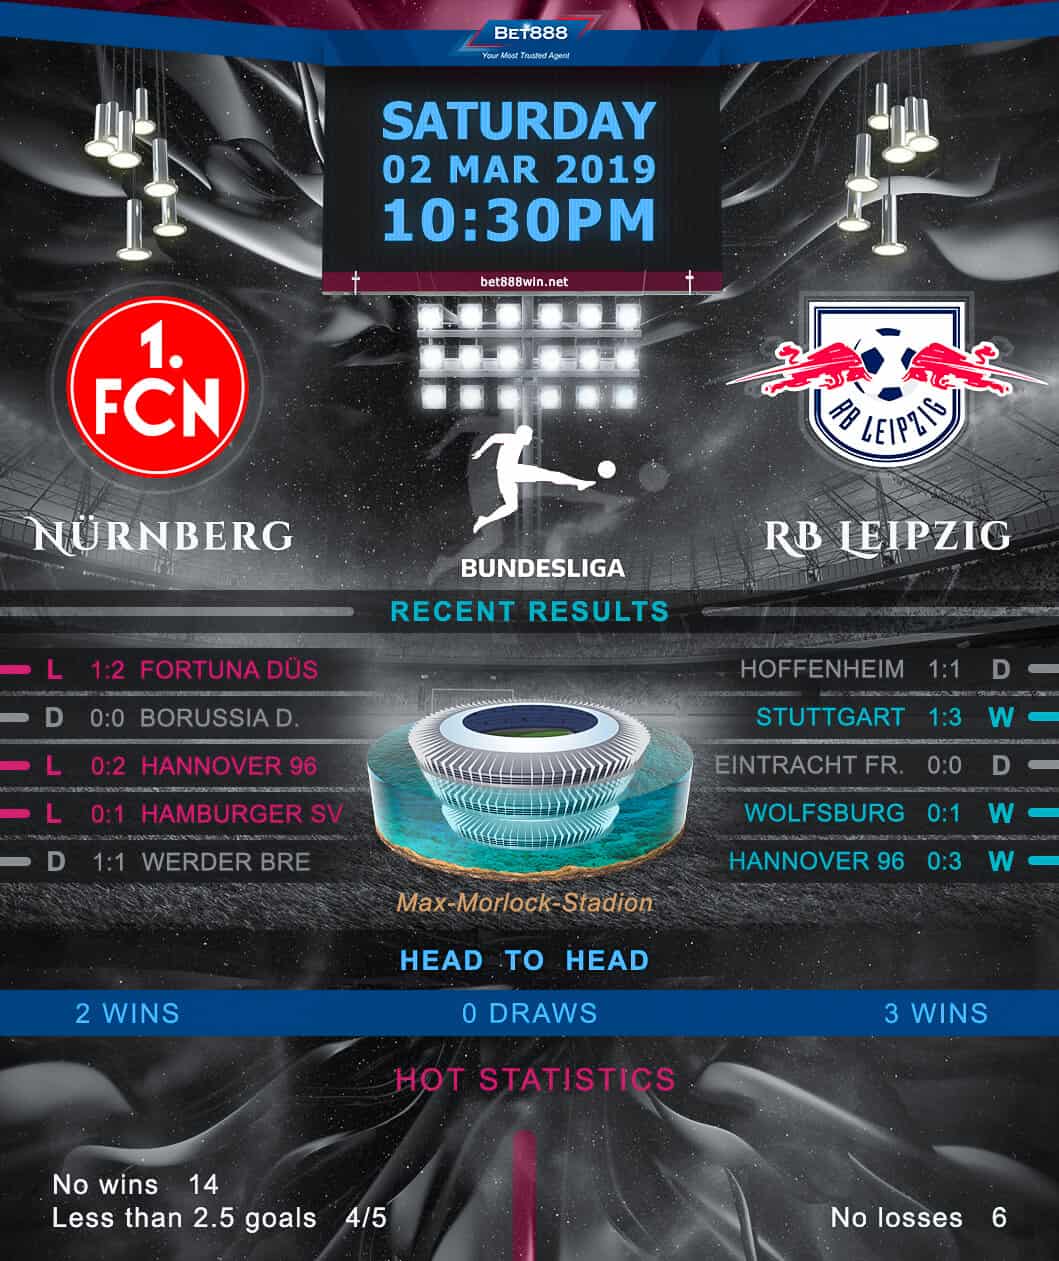 Nurnberg vs RB Leipzig 02/03/19